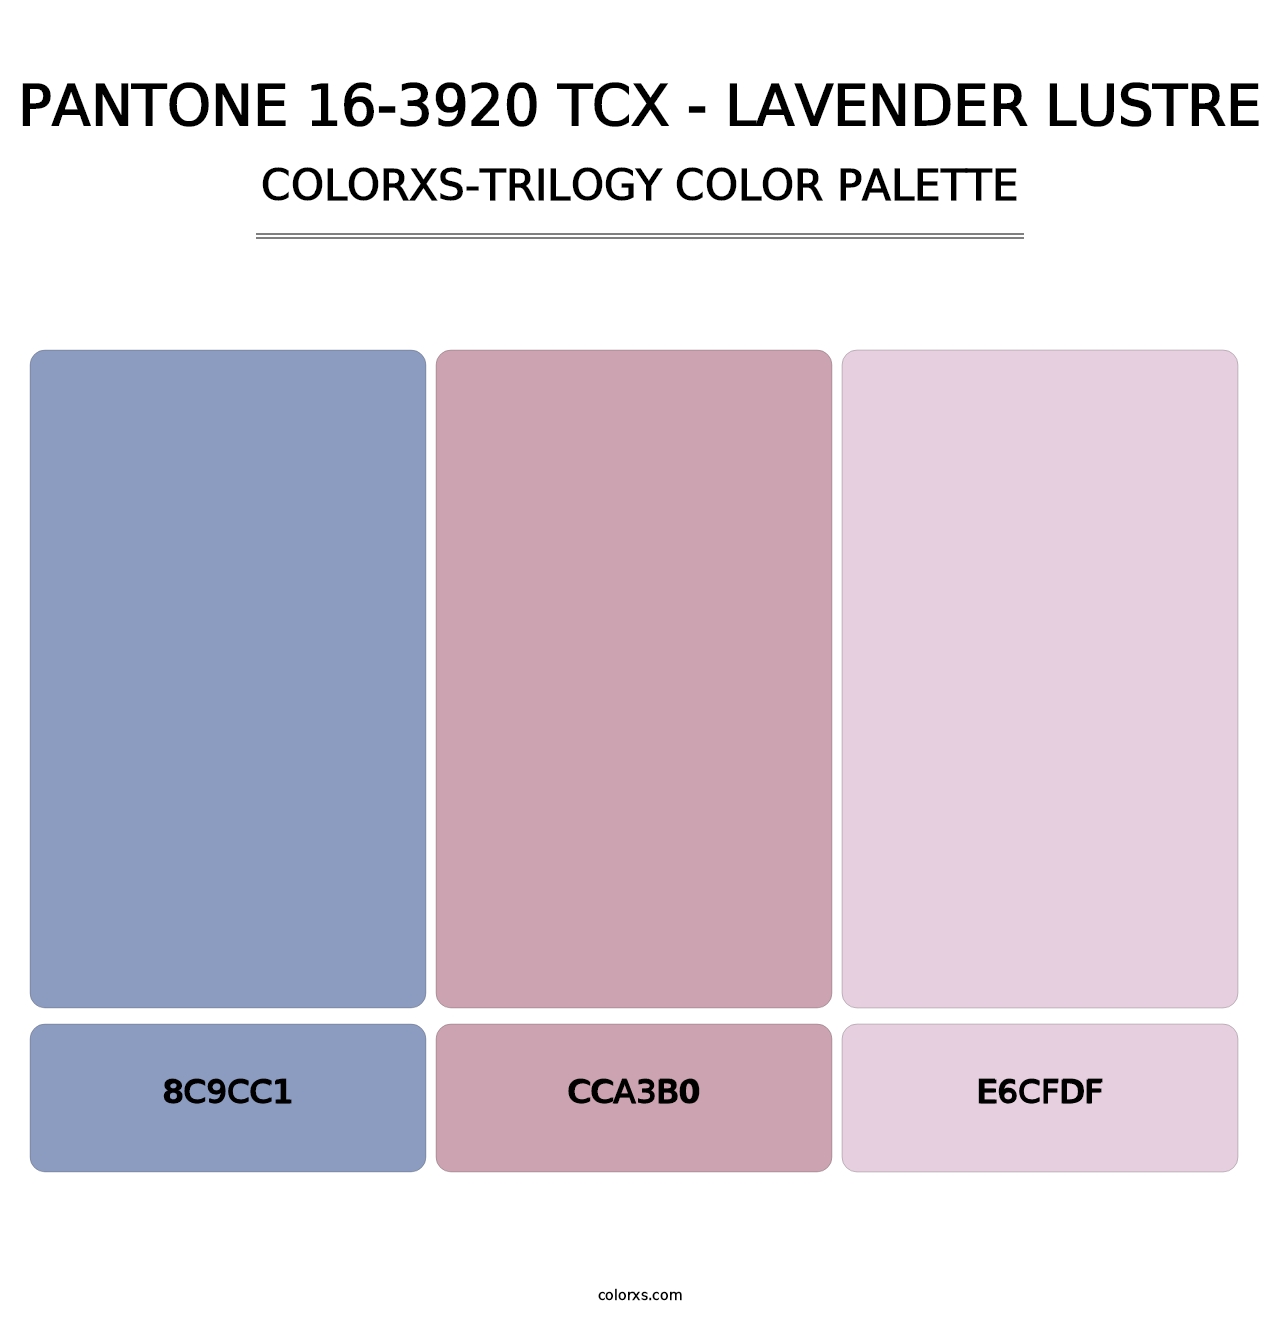 PANTONE 16-3920 TCX - Lavender Lustre - Colorxs Trilogy Palette